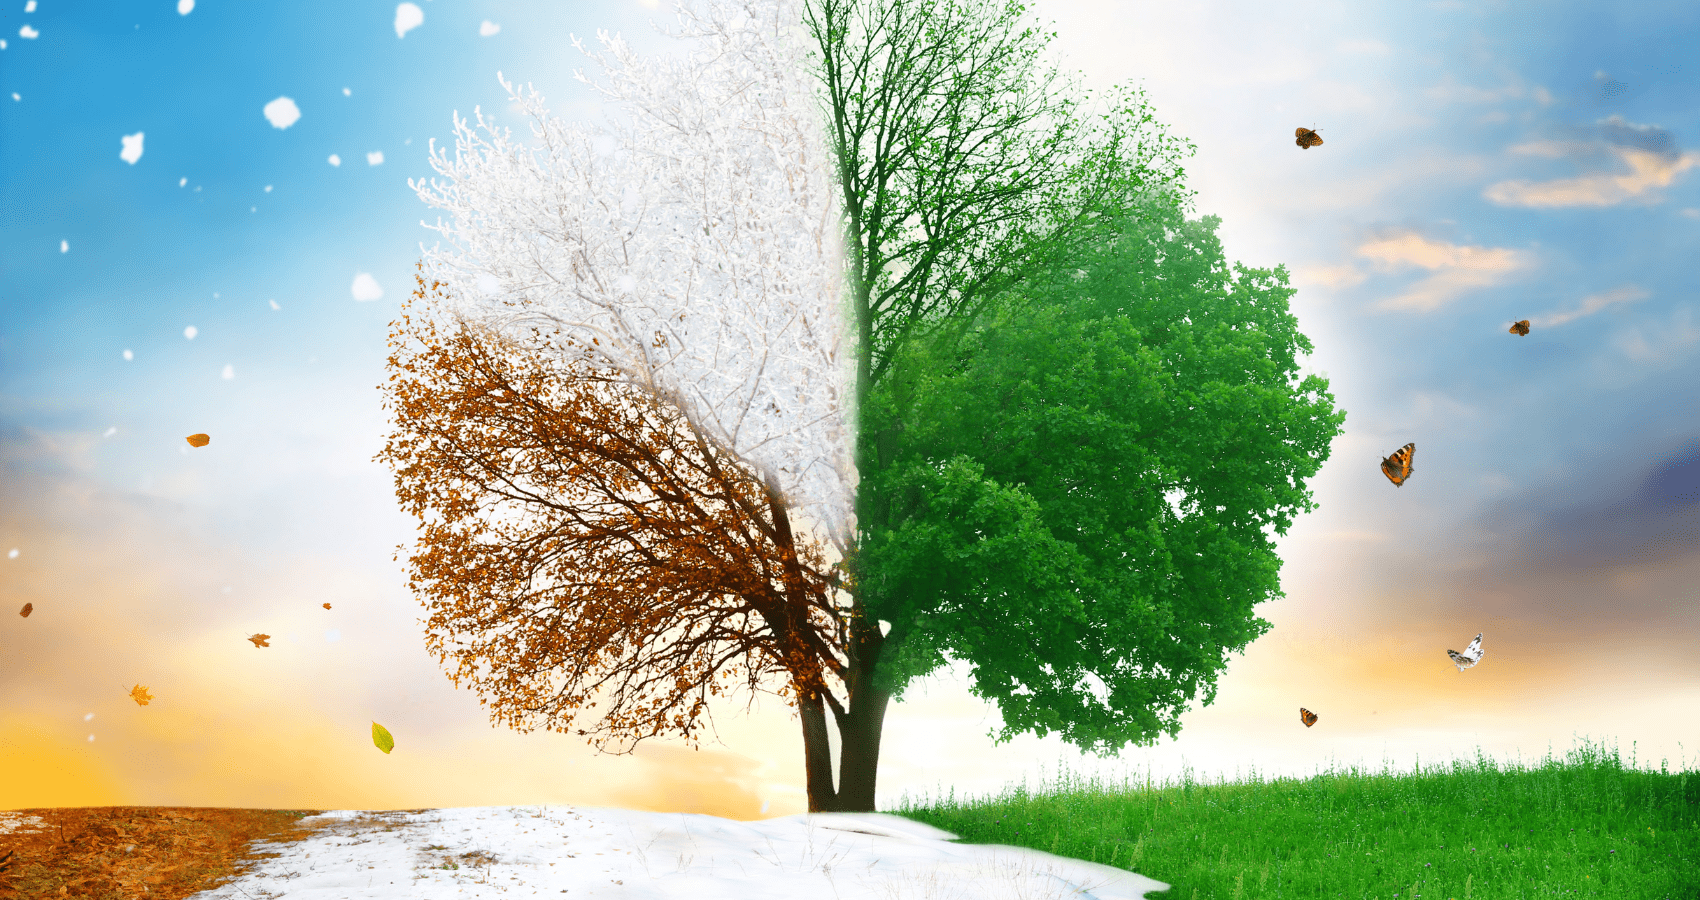 Baum visualisiert den Wechsel der Jahreszeiten und symbolisiert die saisonale Pflege durch Garten&Grundstück.